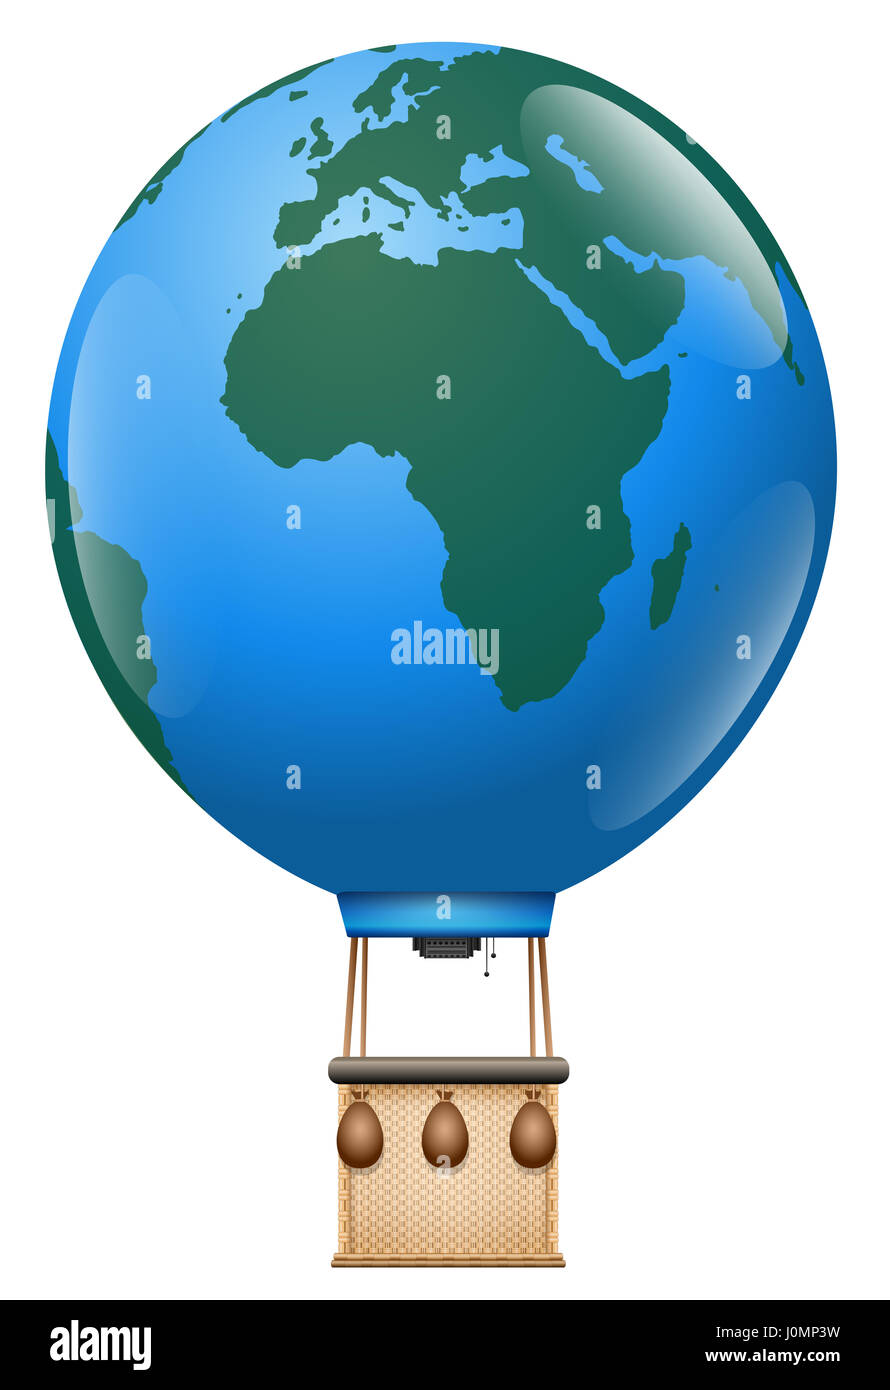 Europa África Viaje - Excursión en globo de aire caliente con el planeta tierra y vintage cesta globo alrededor del mundo - ilustración aislada sobre fondo blanco. Foto de stock